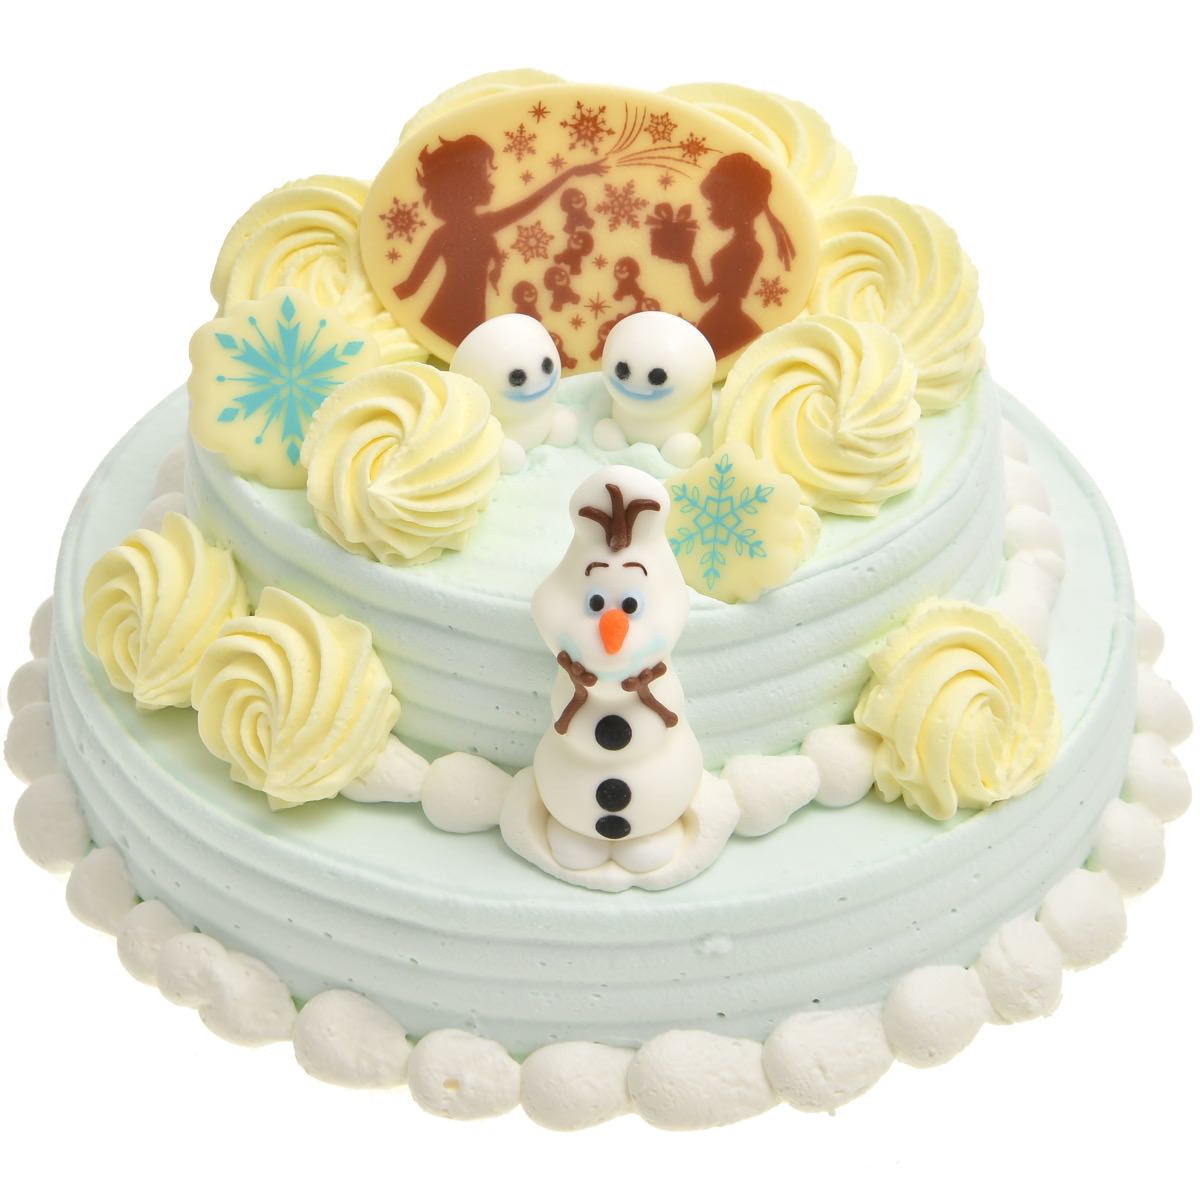 エルサのサプライズのケーキを再現 31アイスクリーム アナと雪の女王